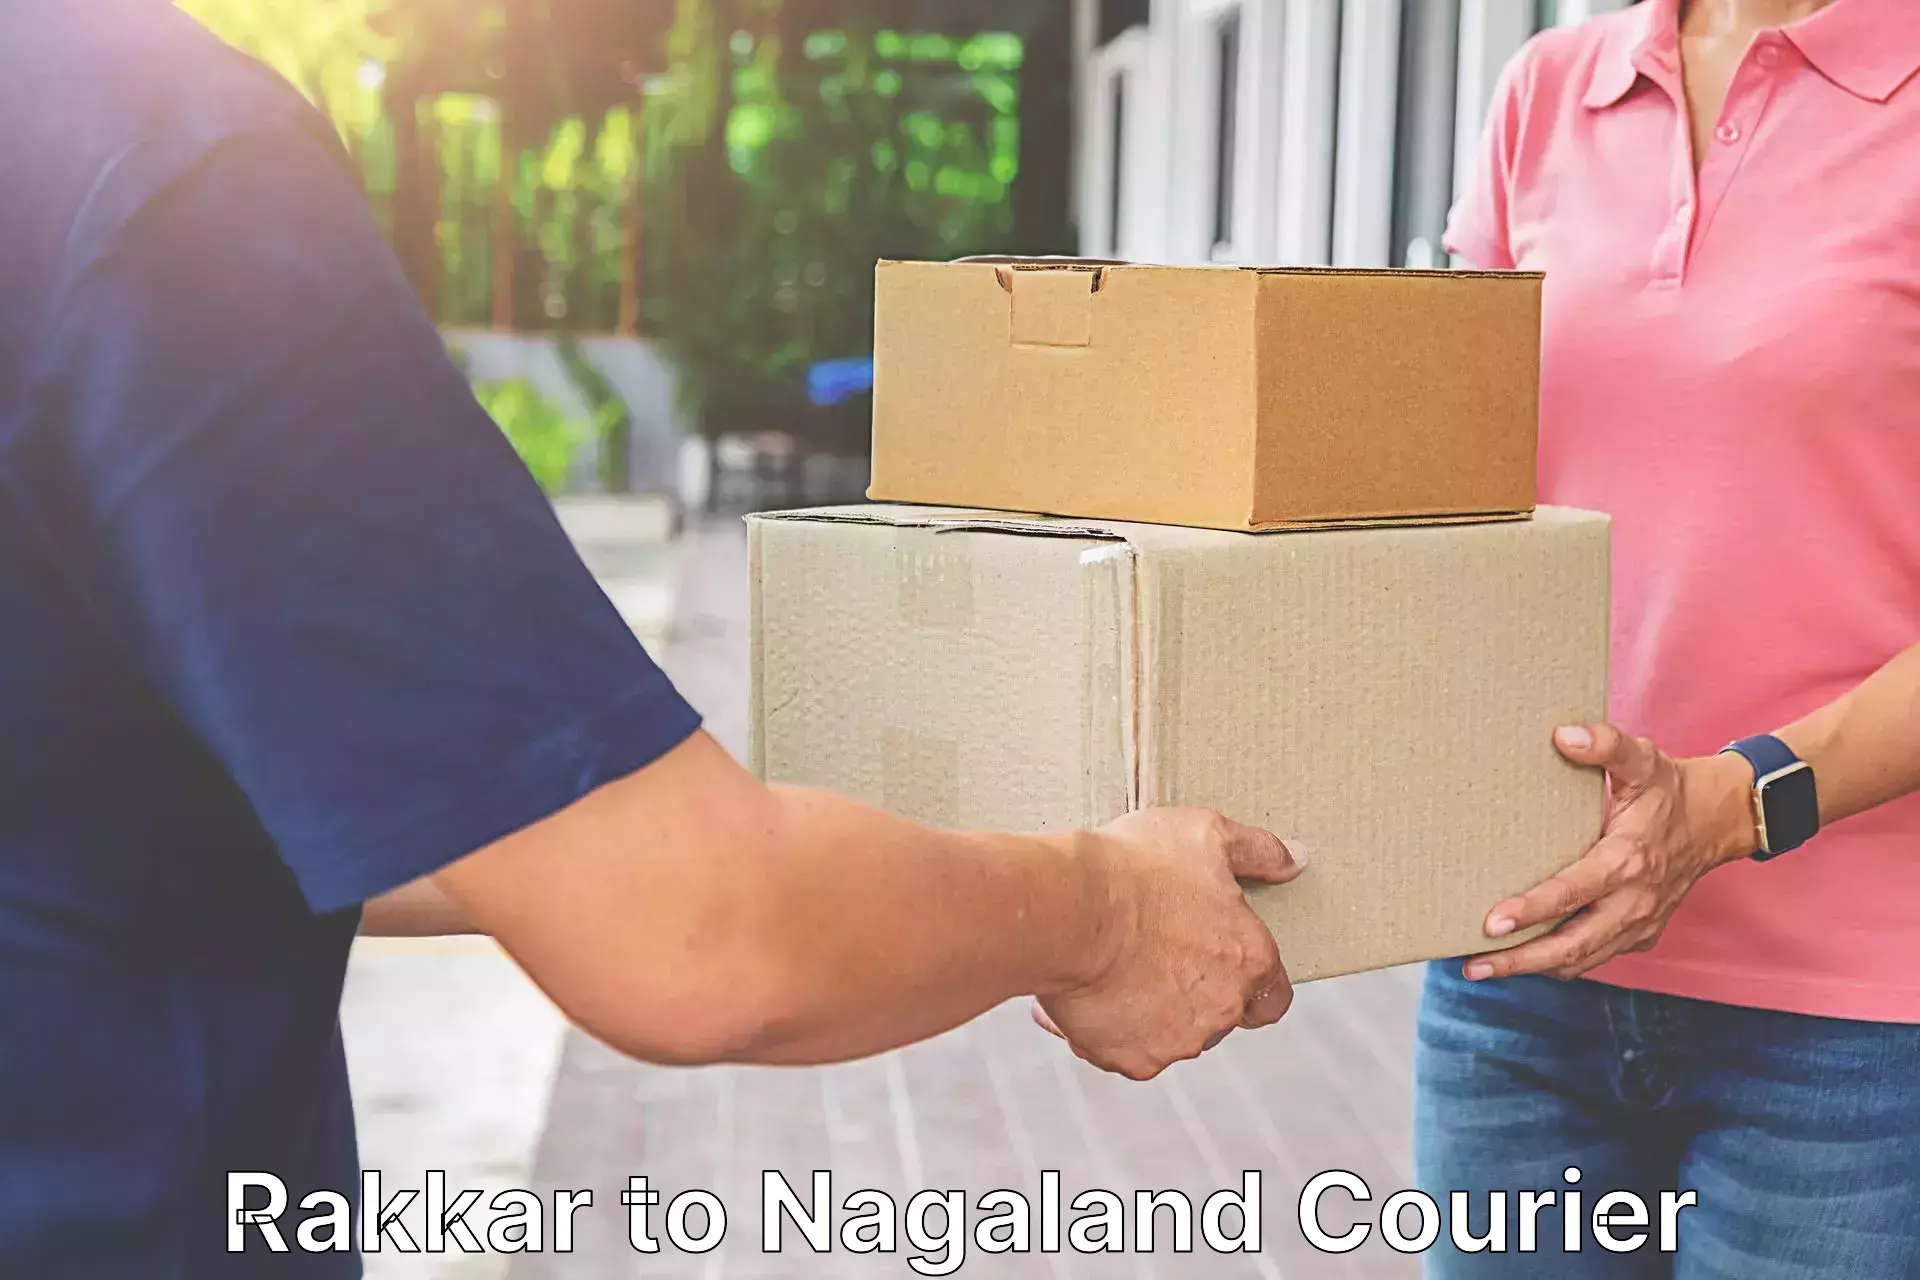 Express courier capabilities Rakkar to NIT Nagaland